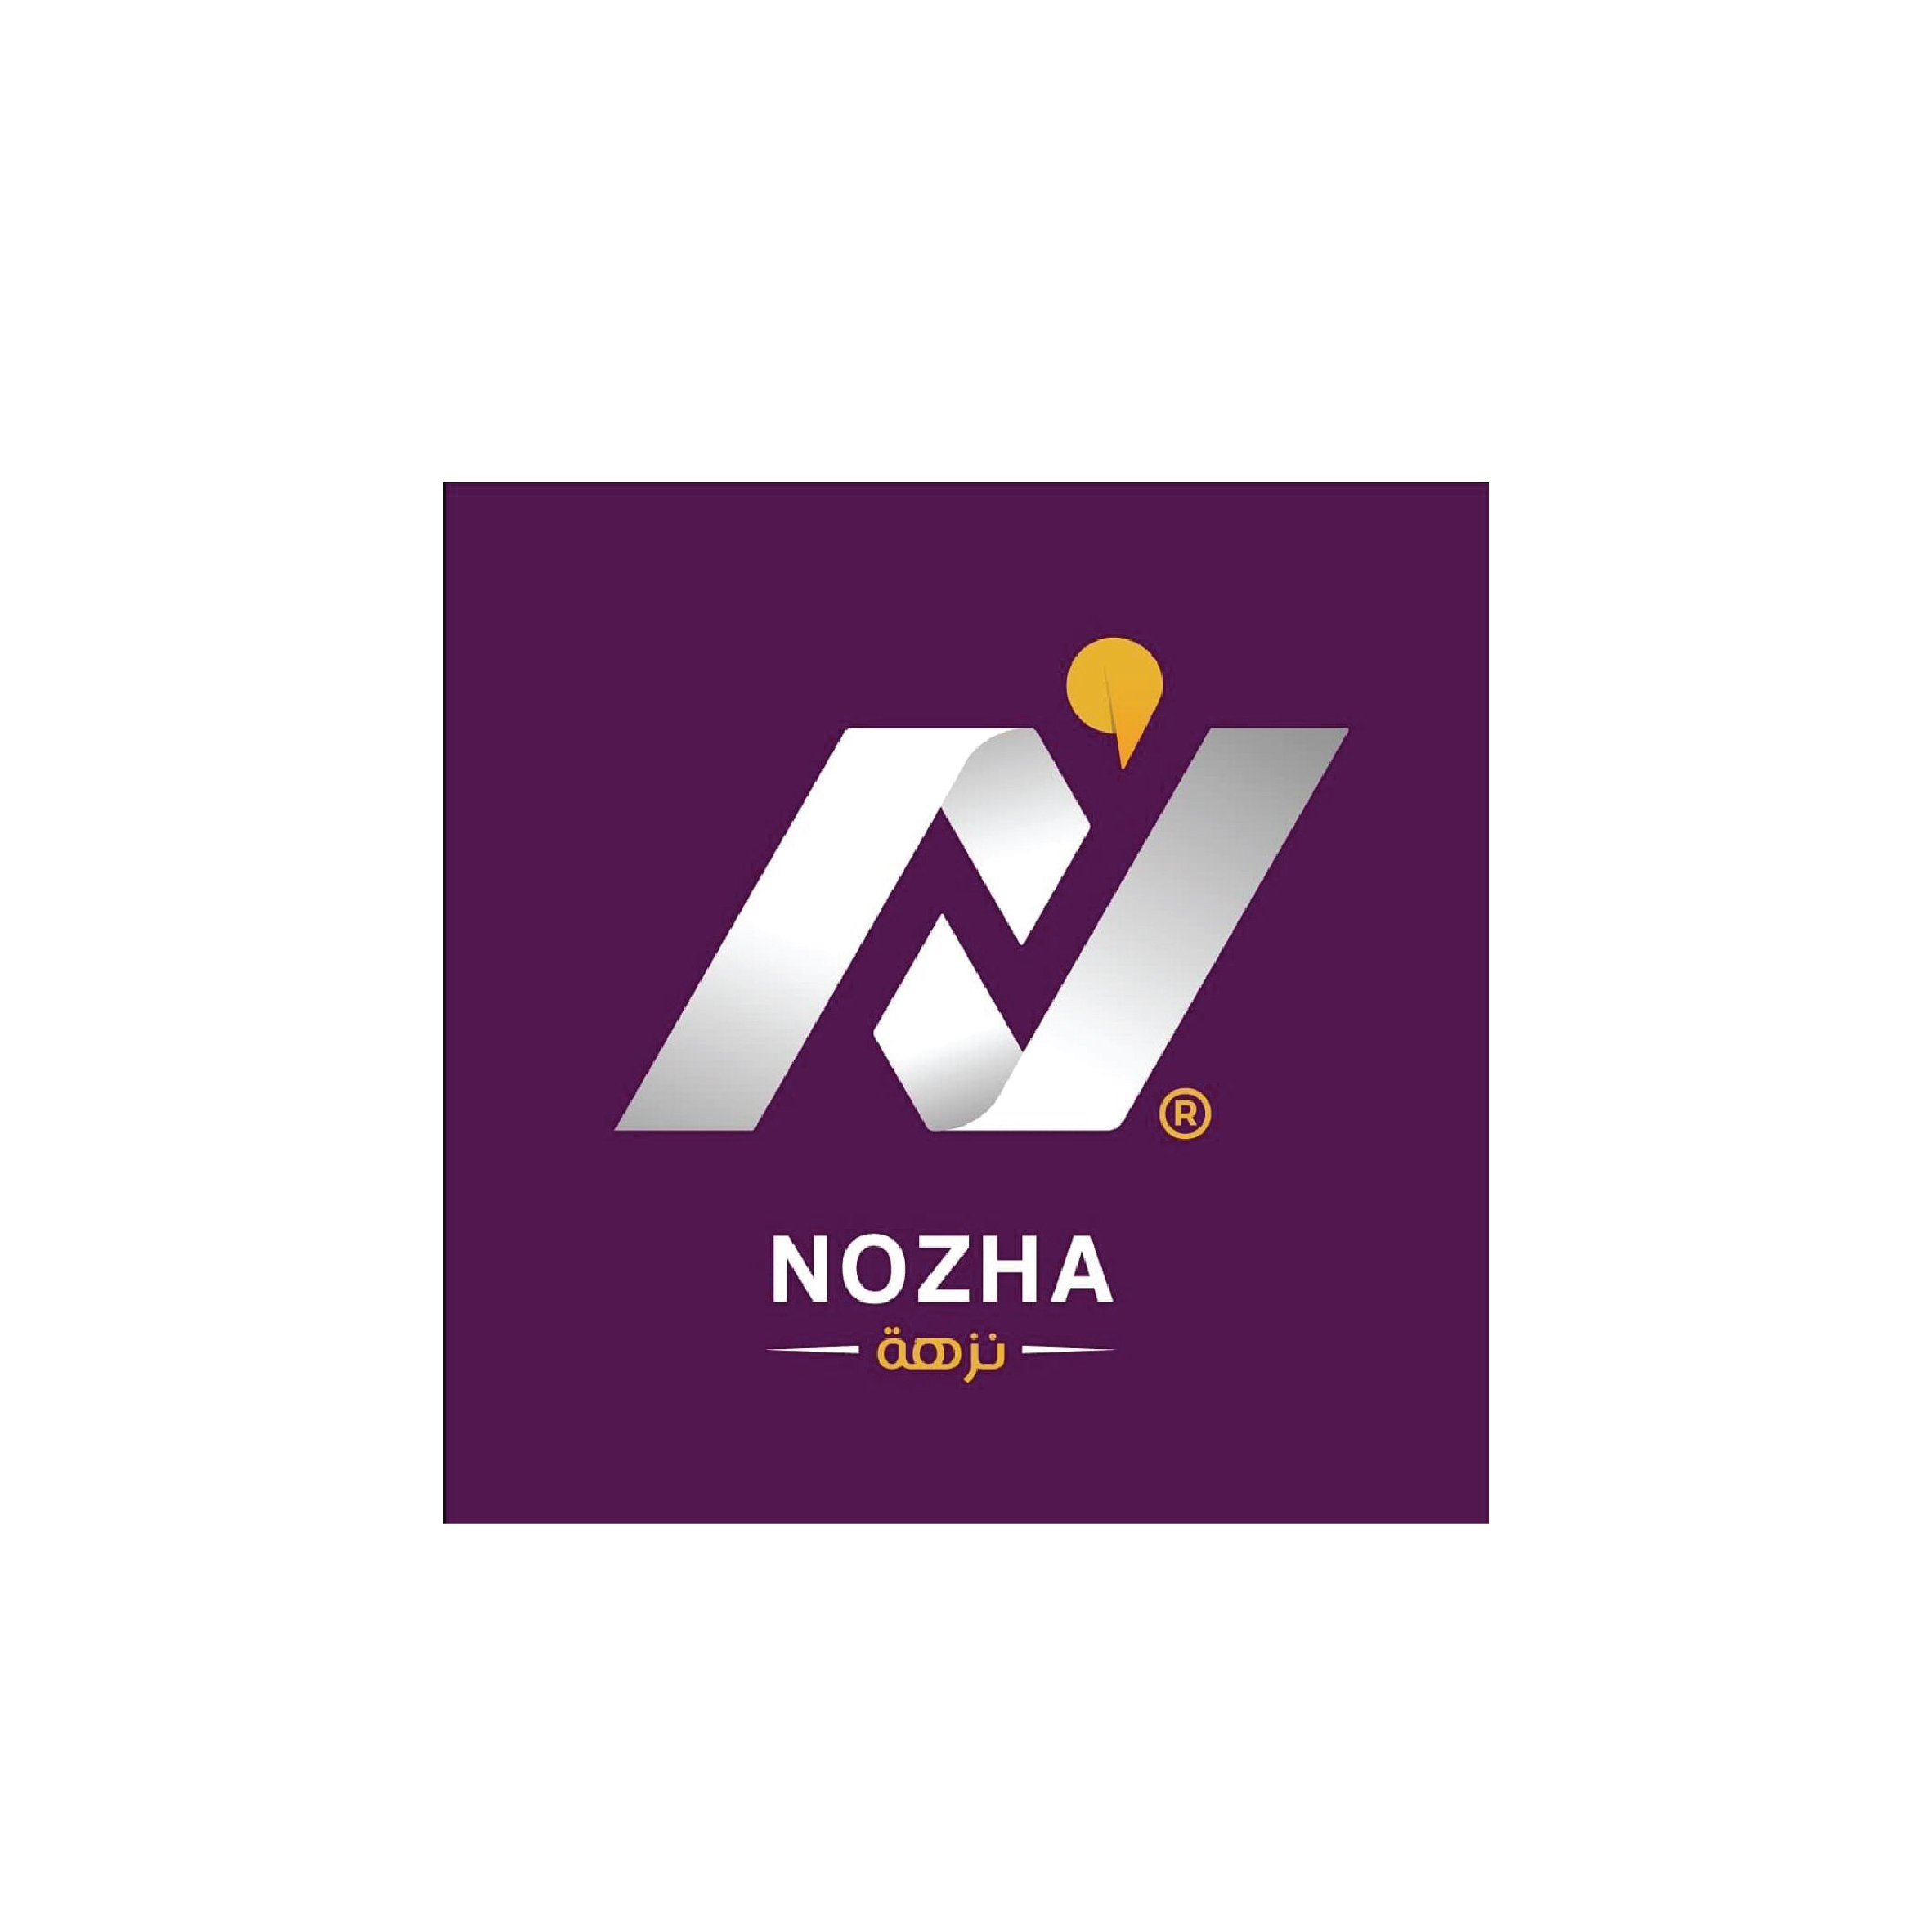 Nozha